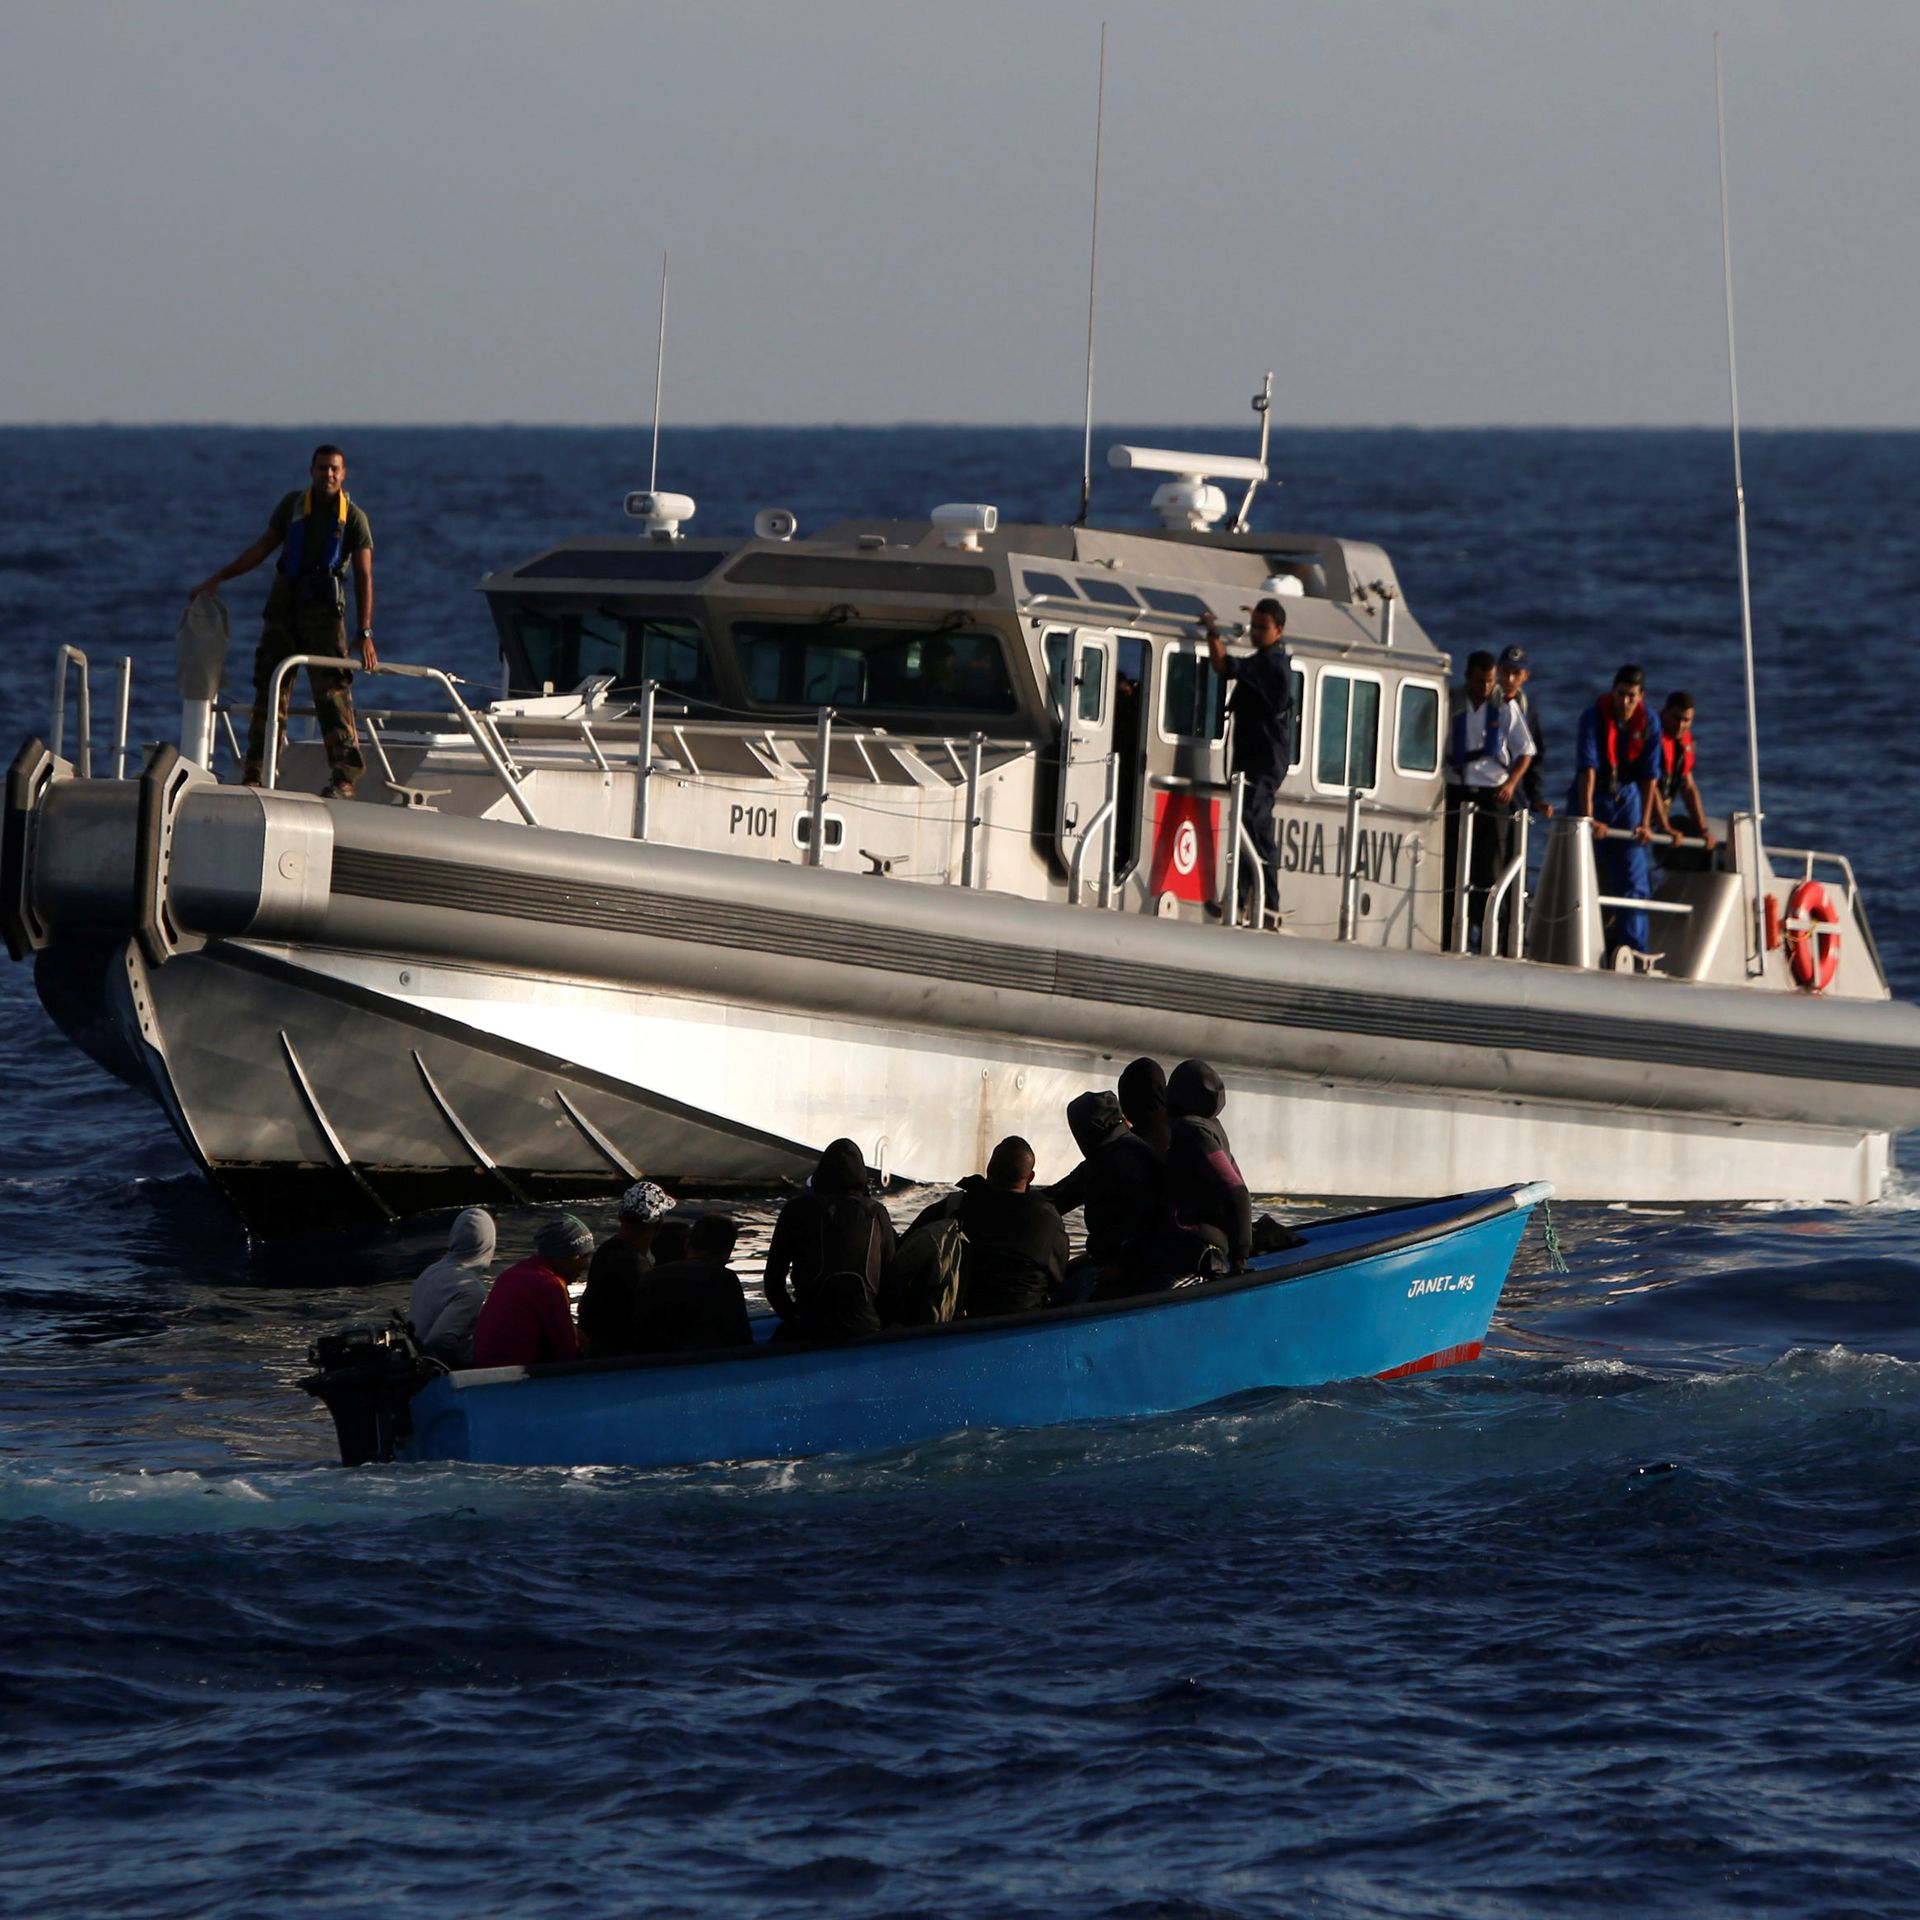 At least 57 migrants die in shipwreck off Libyan coast -U.N.